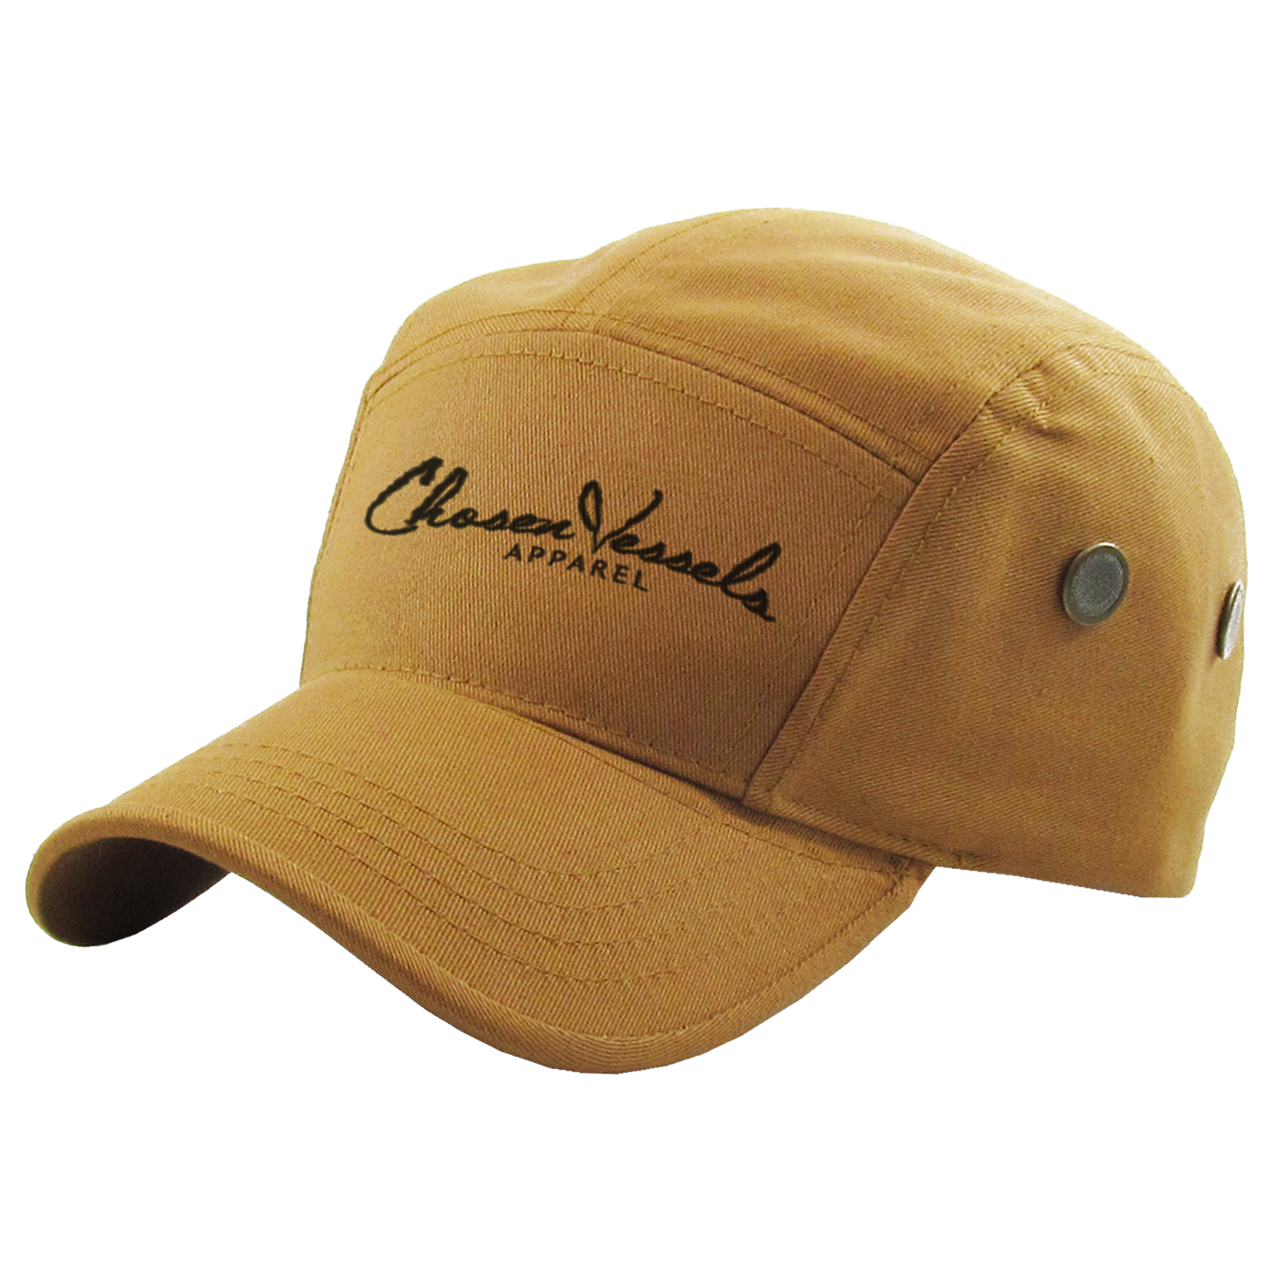 Chosen Vessels Signature Soldier Hat (Brown & Black)